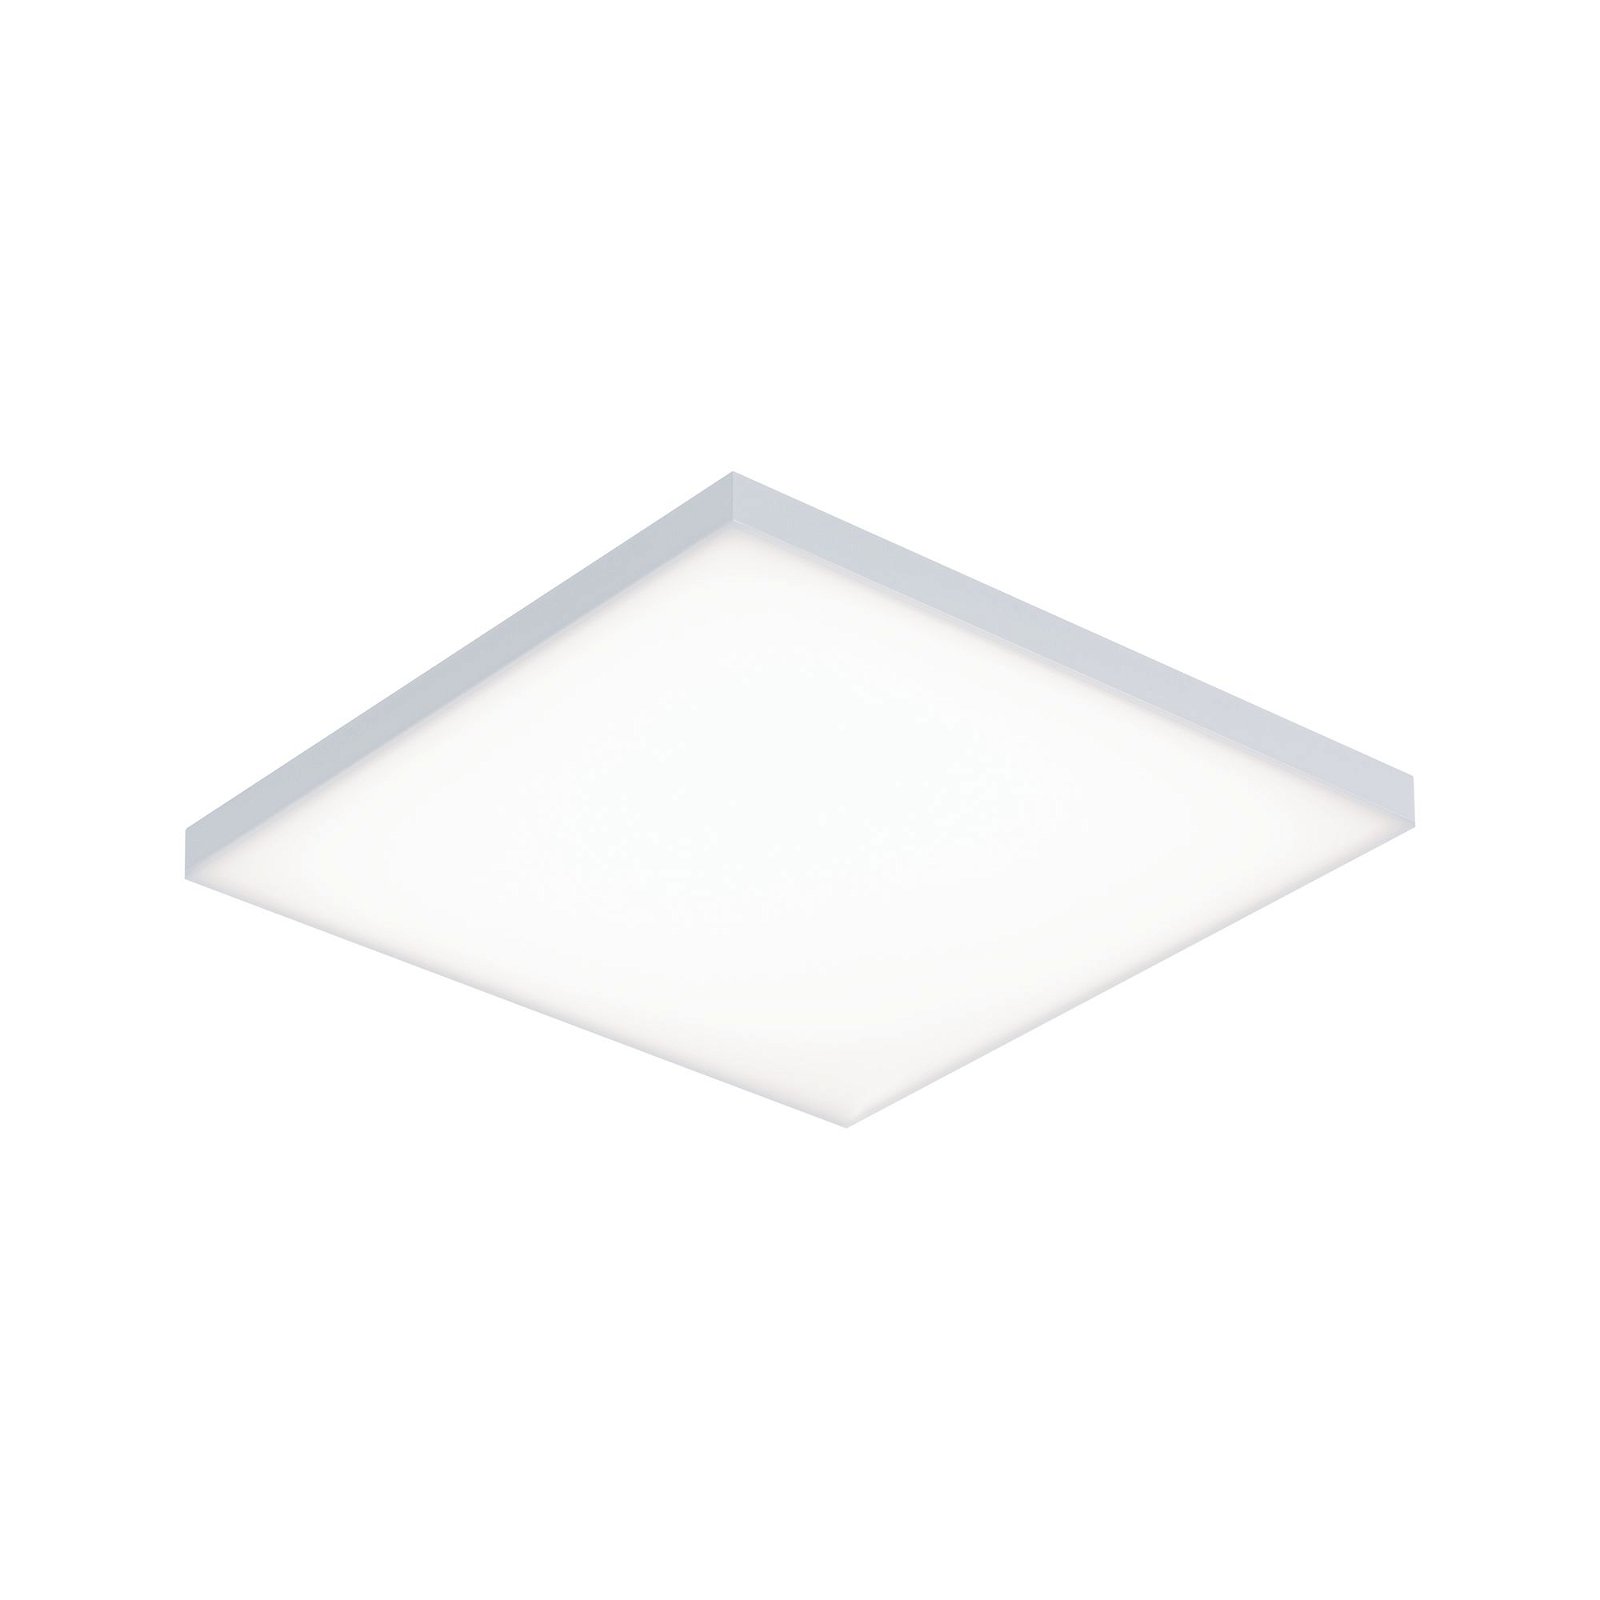 LED-paneel Smart Home Zigbee Velora hoekig 295x295mm 10,5W 1100lm Tunable White Wit mat dimbaar